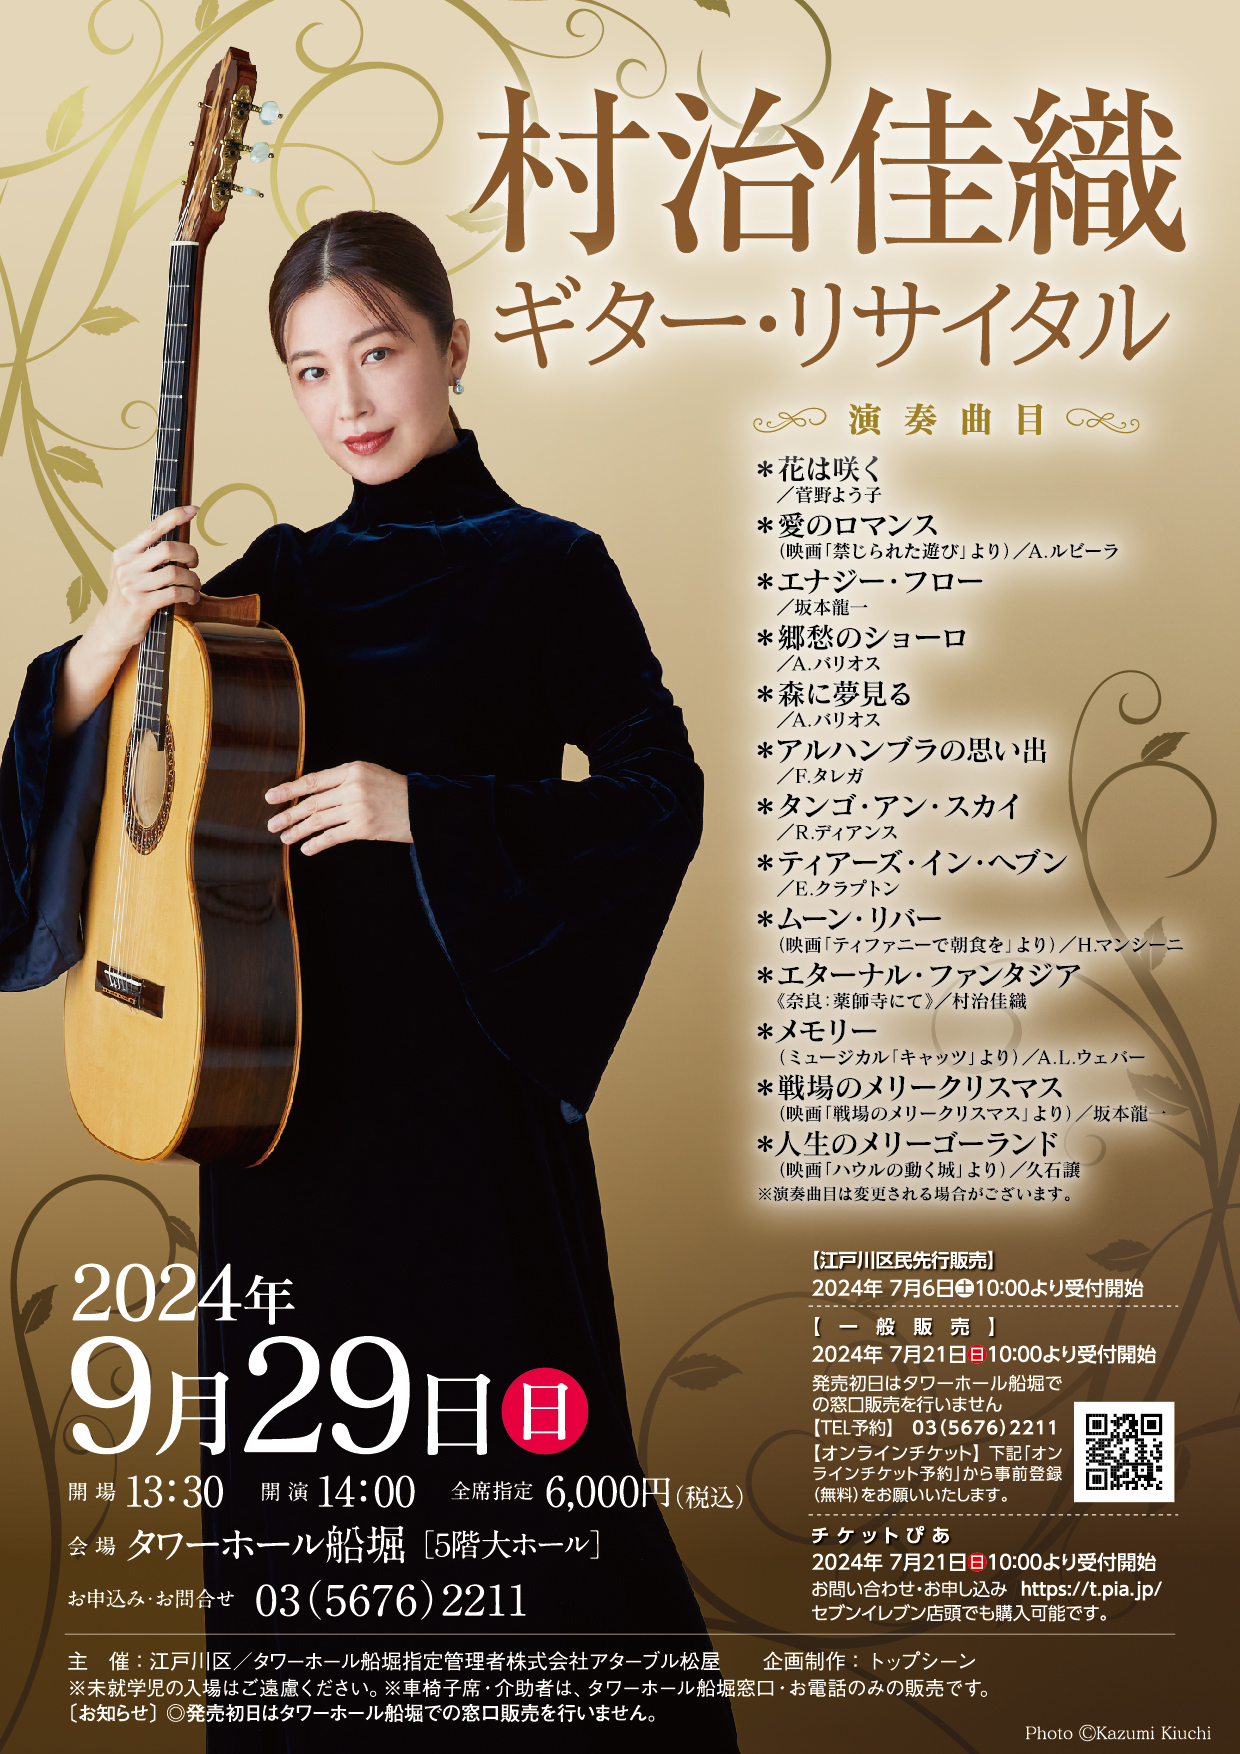 Schedule | 村治佳織 オフィシャルホームページ｜ Kaori Muraji official homepage